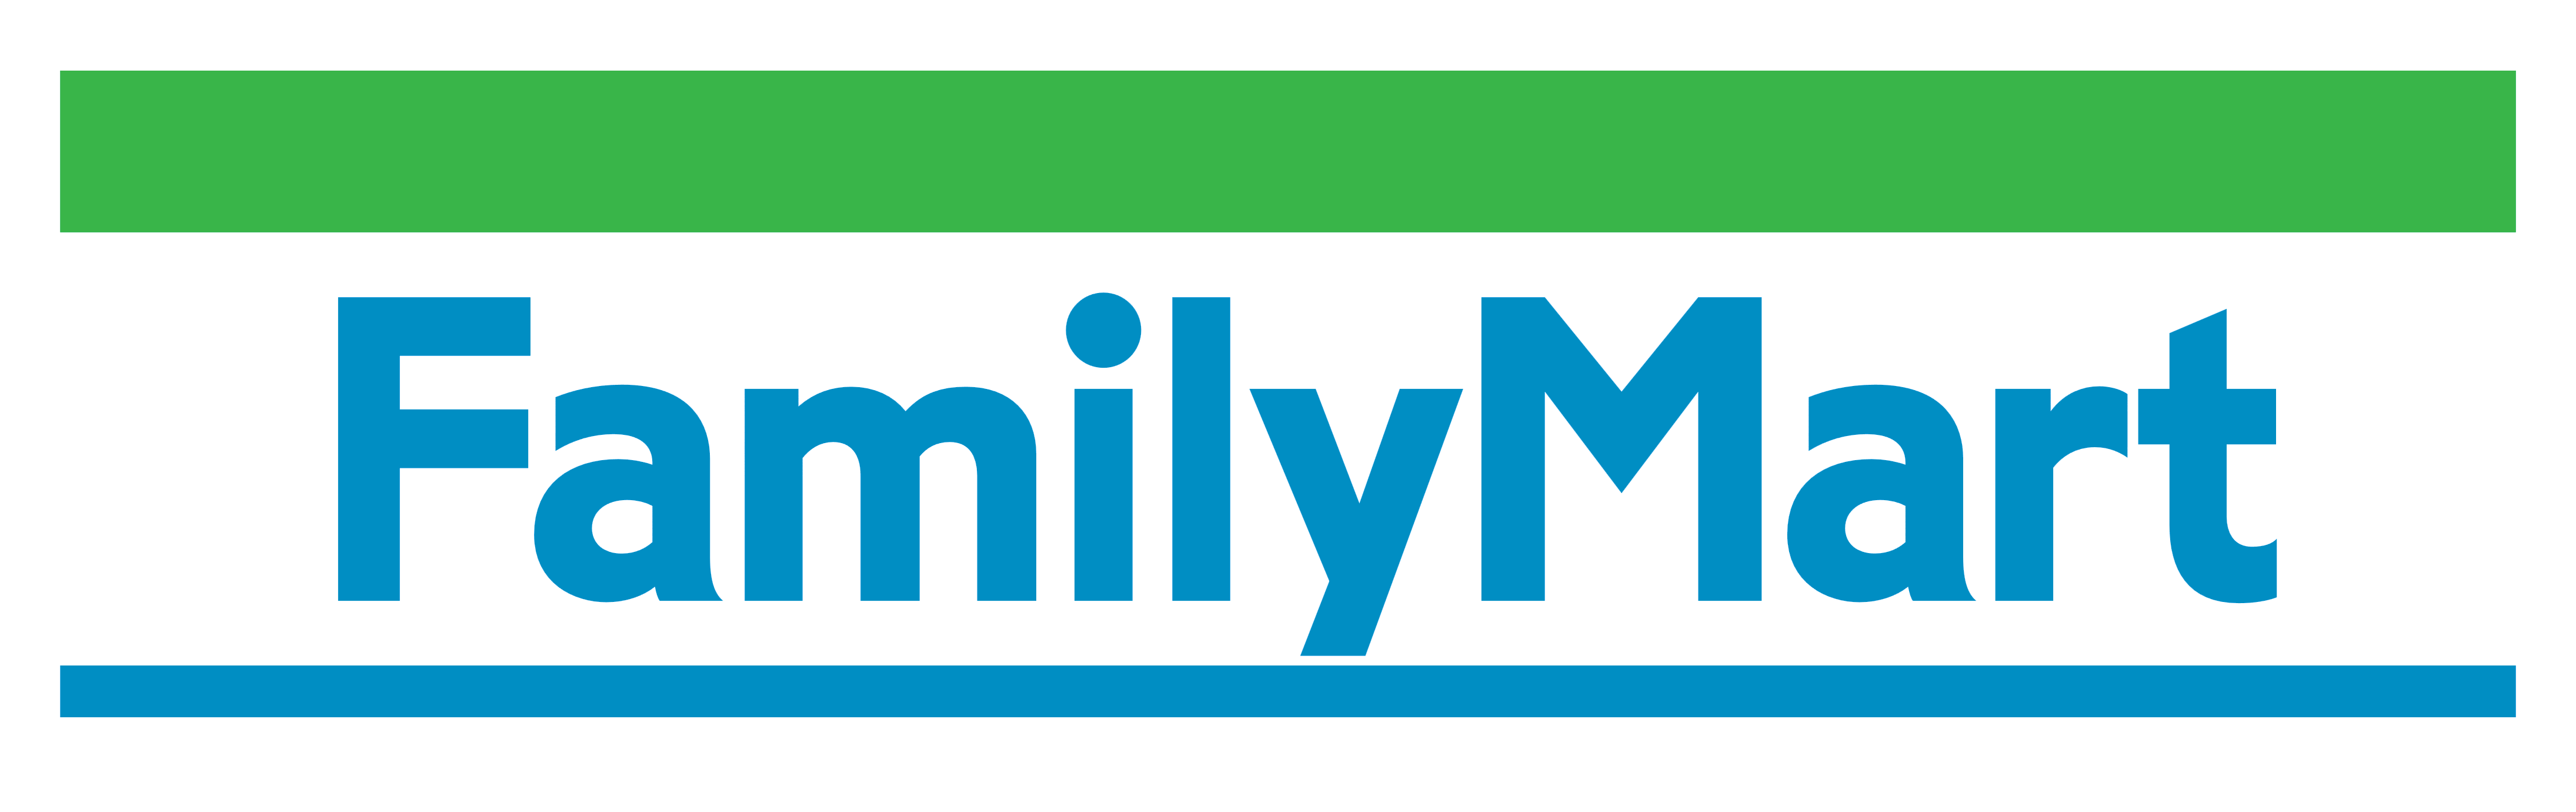 Family Mart Japan. Family Mart Thailand. Udn logo.